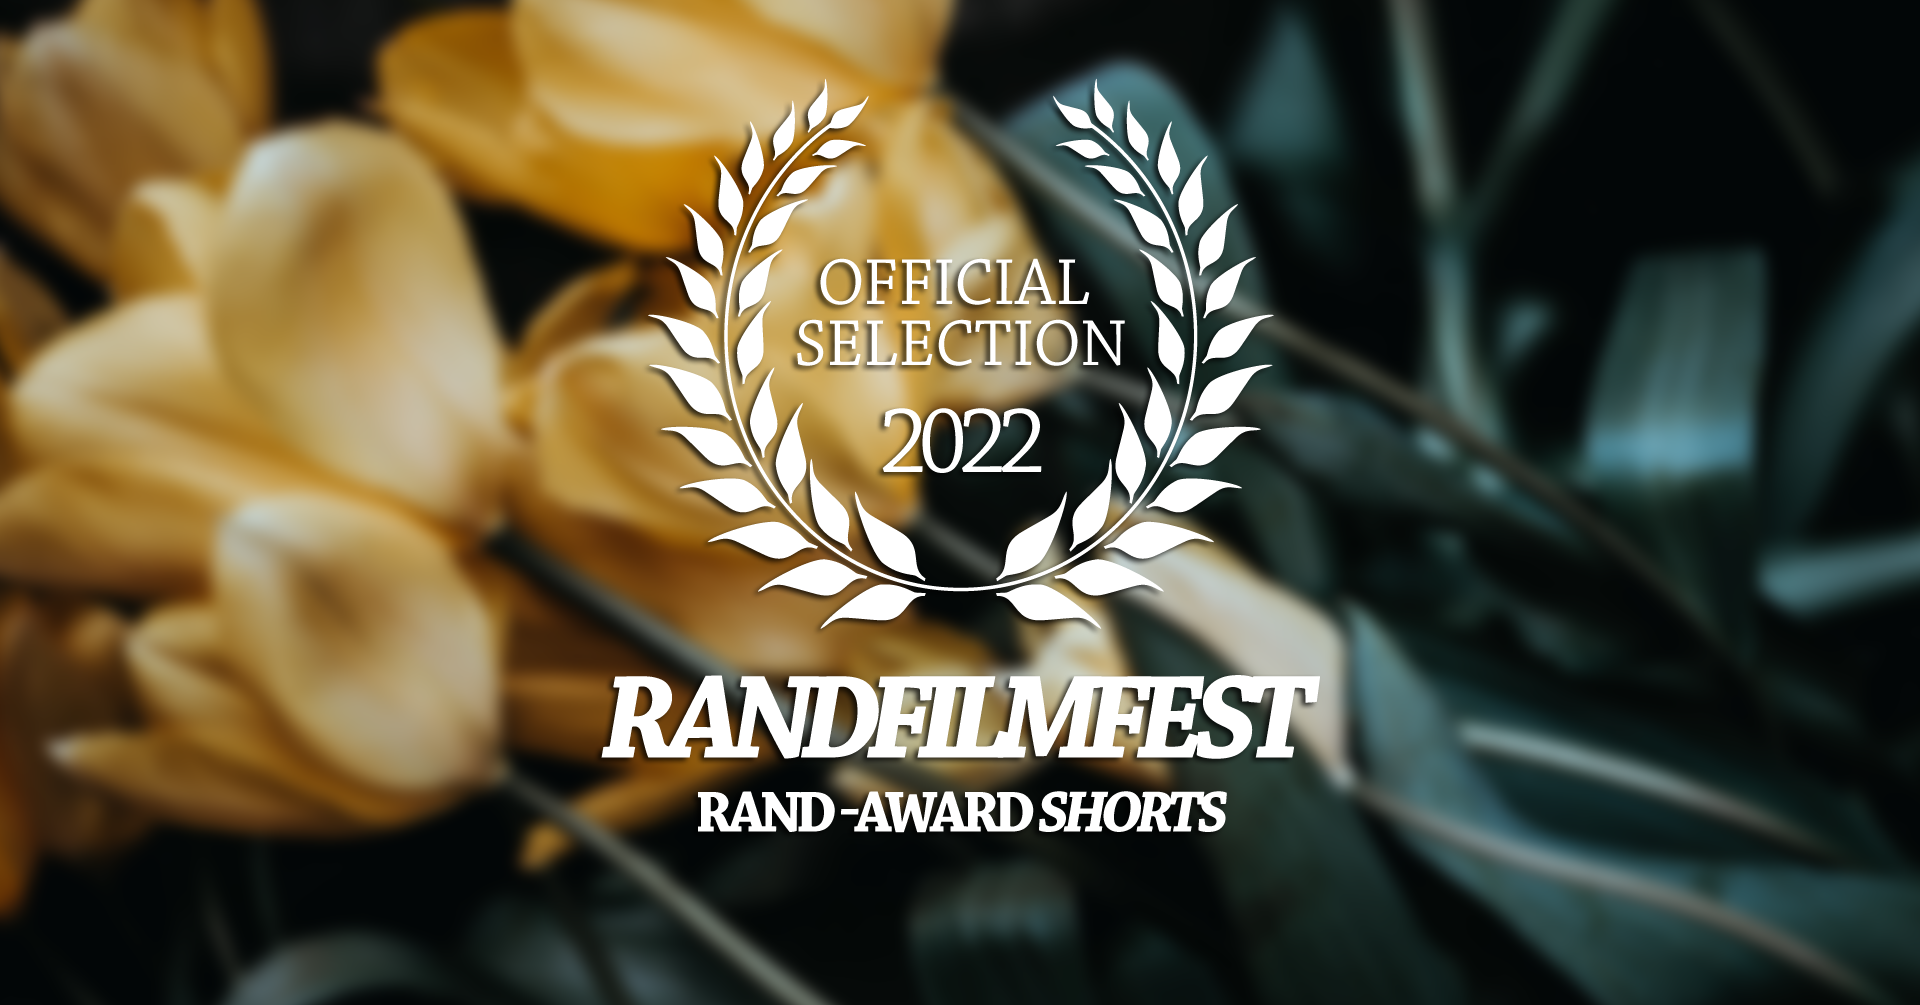 Kurzfilmrolle 2: Rand-Award Shorts Nominees 2022